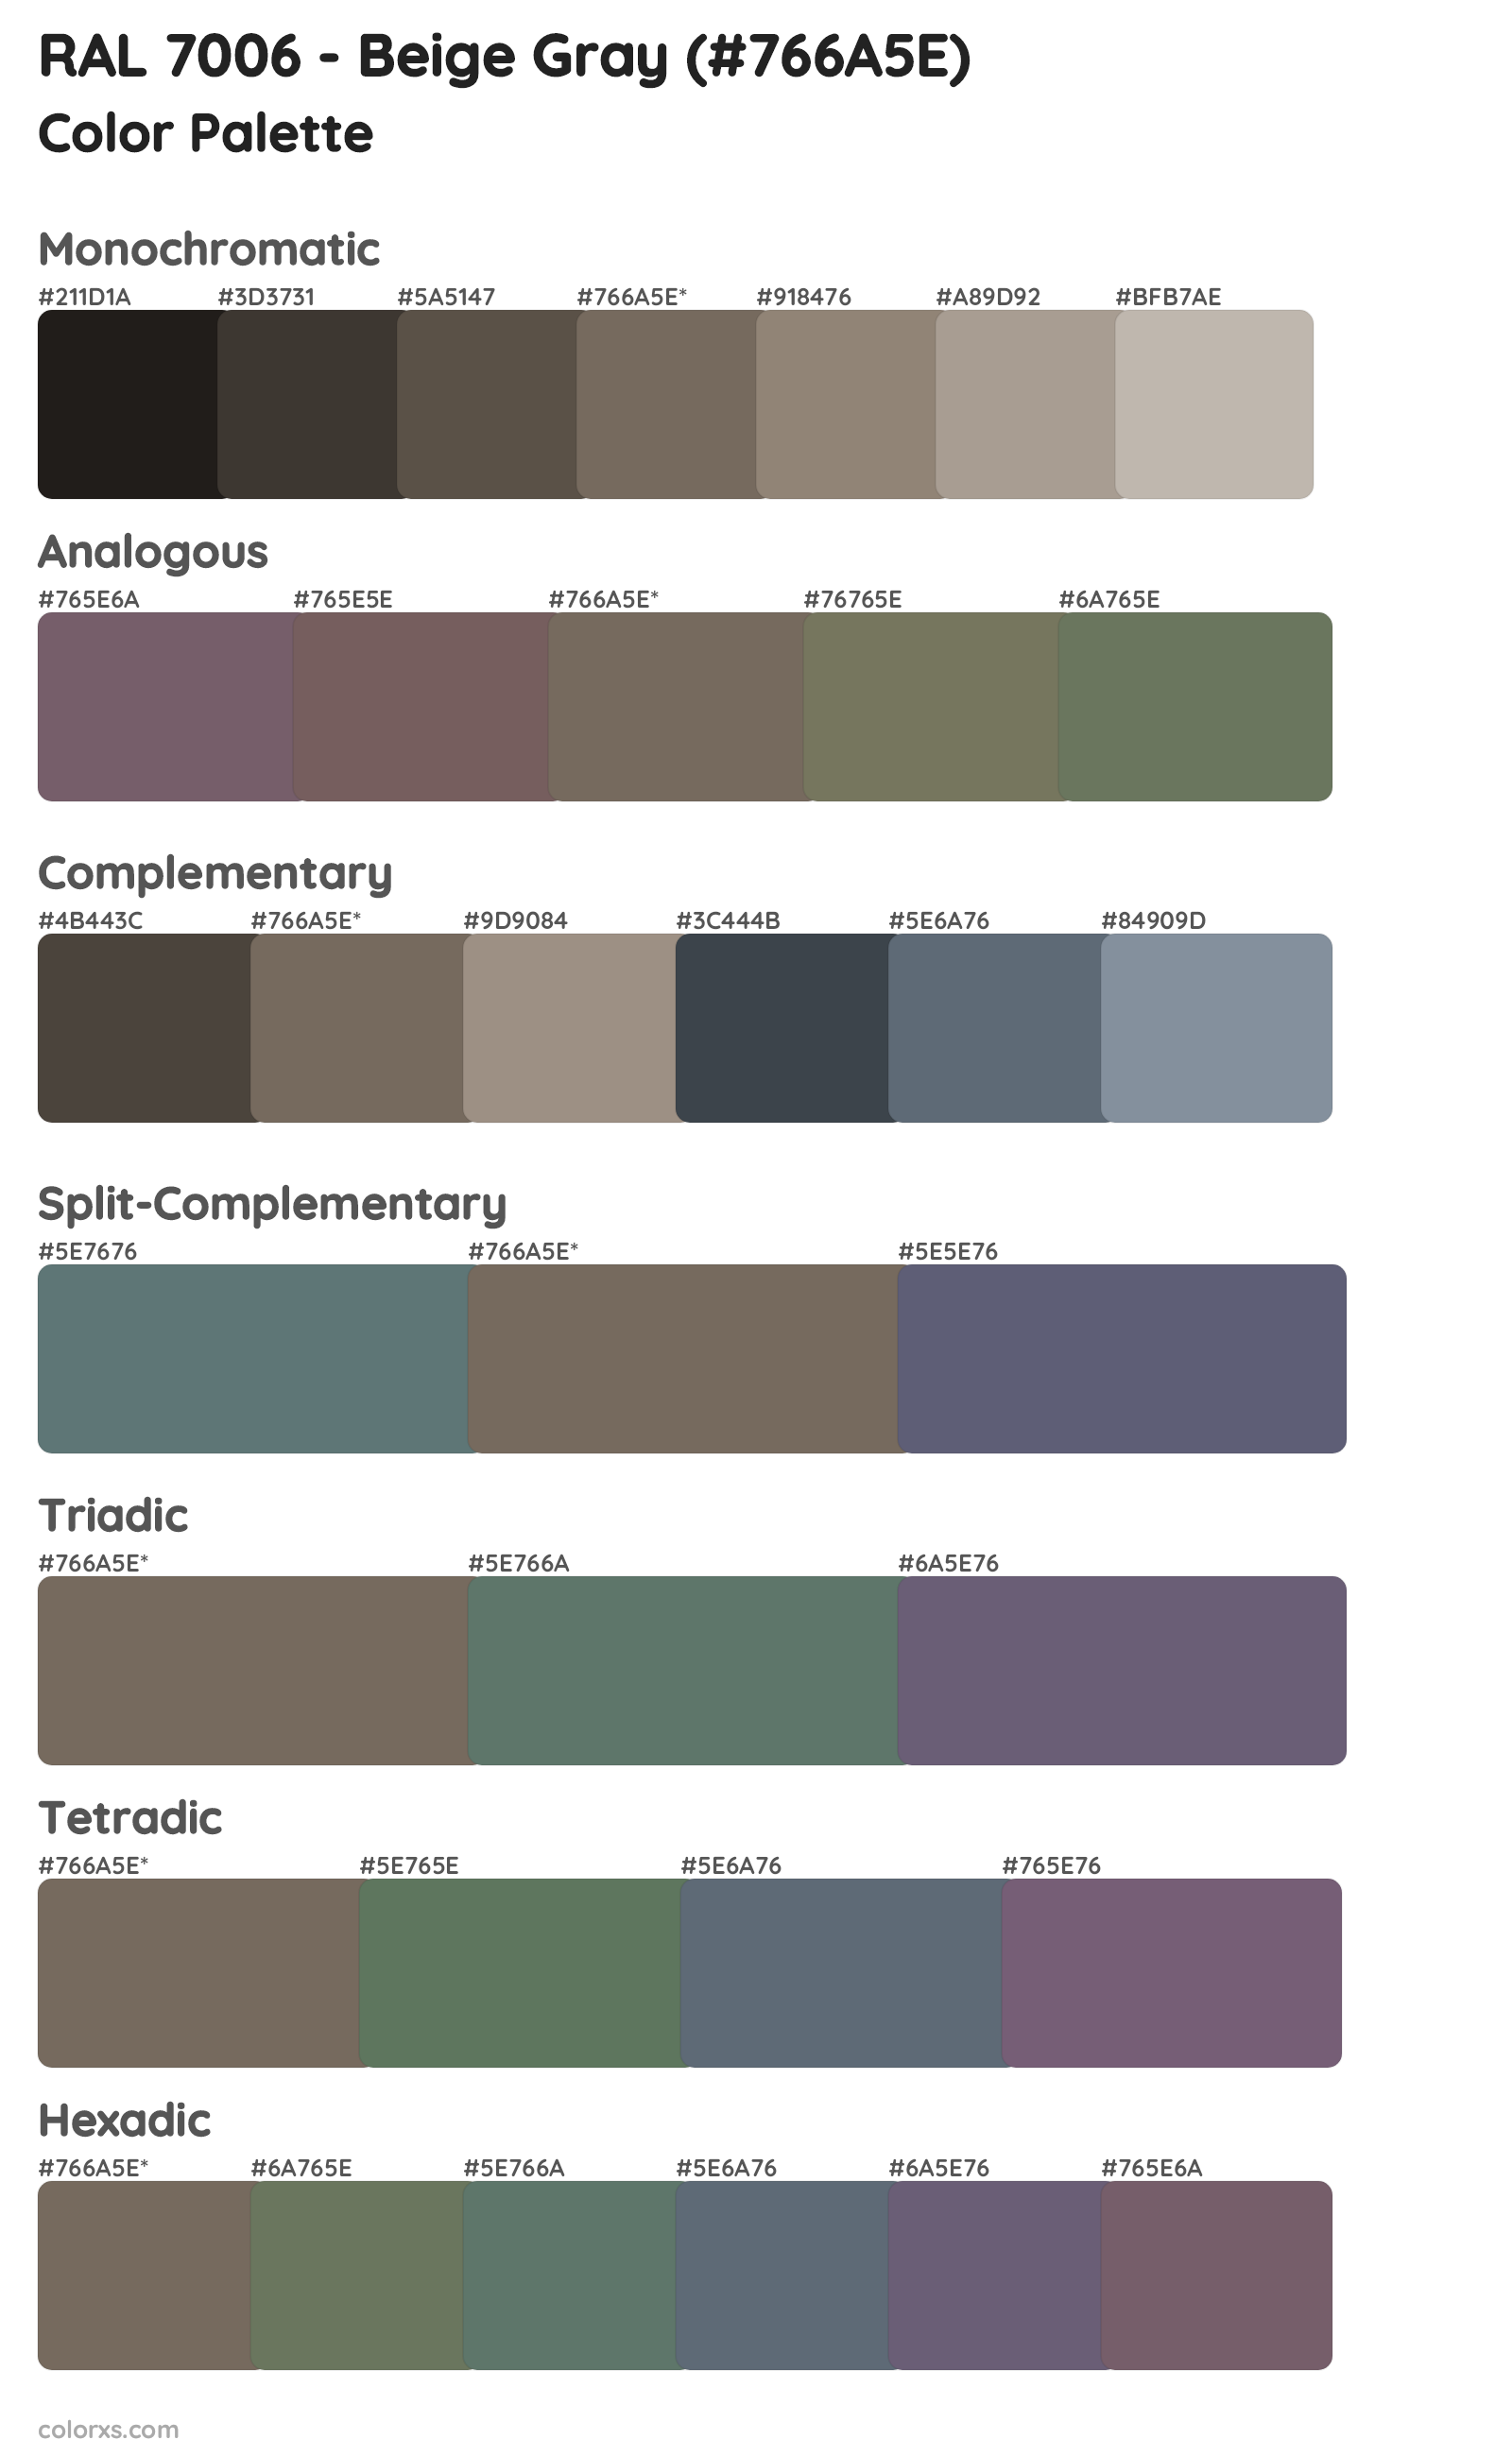 RAL 7006 - Beige Gray Color Scheme Palettes